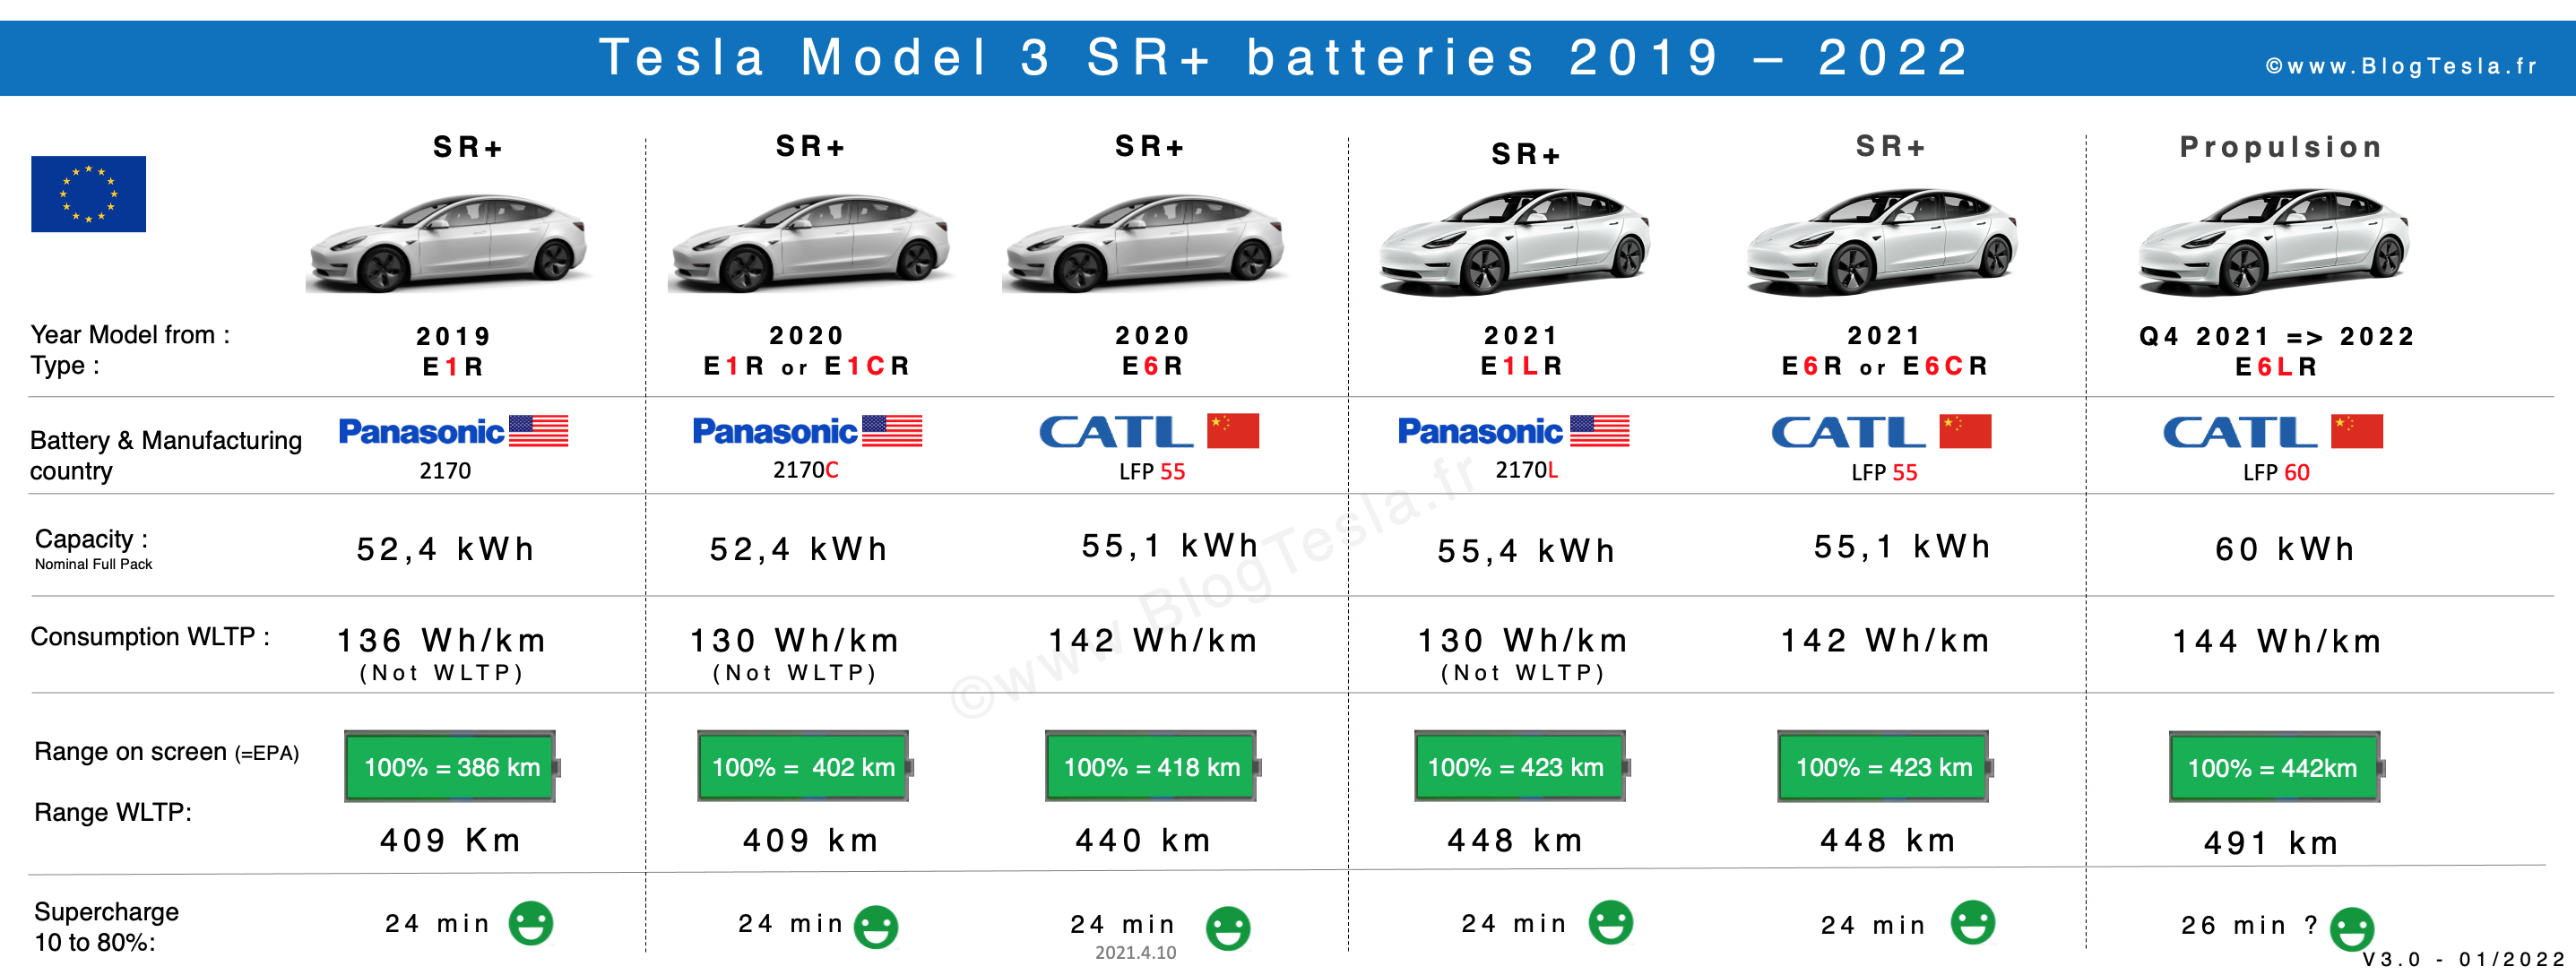 Batteries-Tesla-Model-3-SR-Propulsion-2019-2022.png